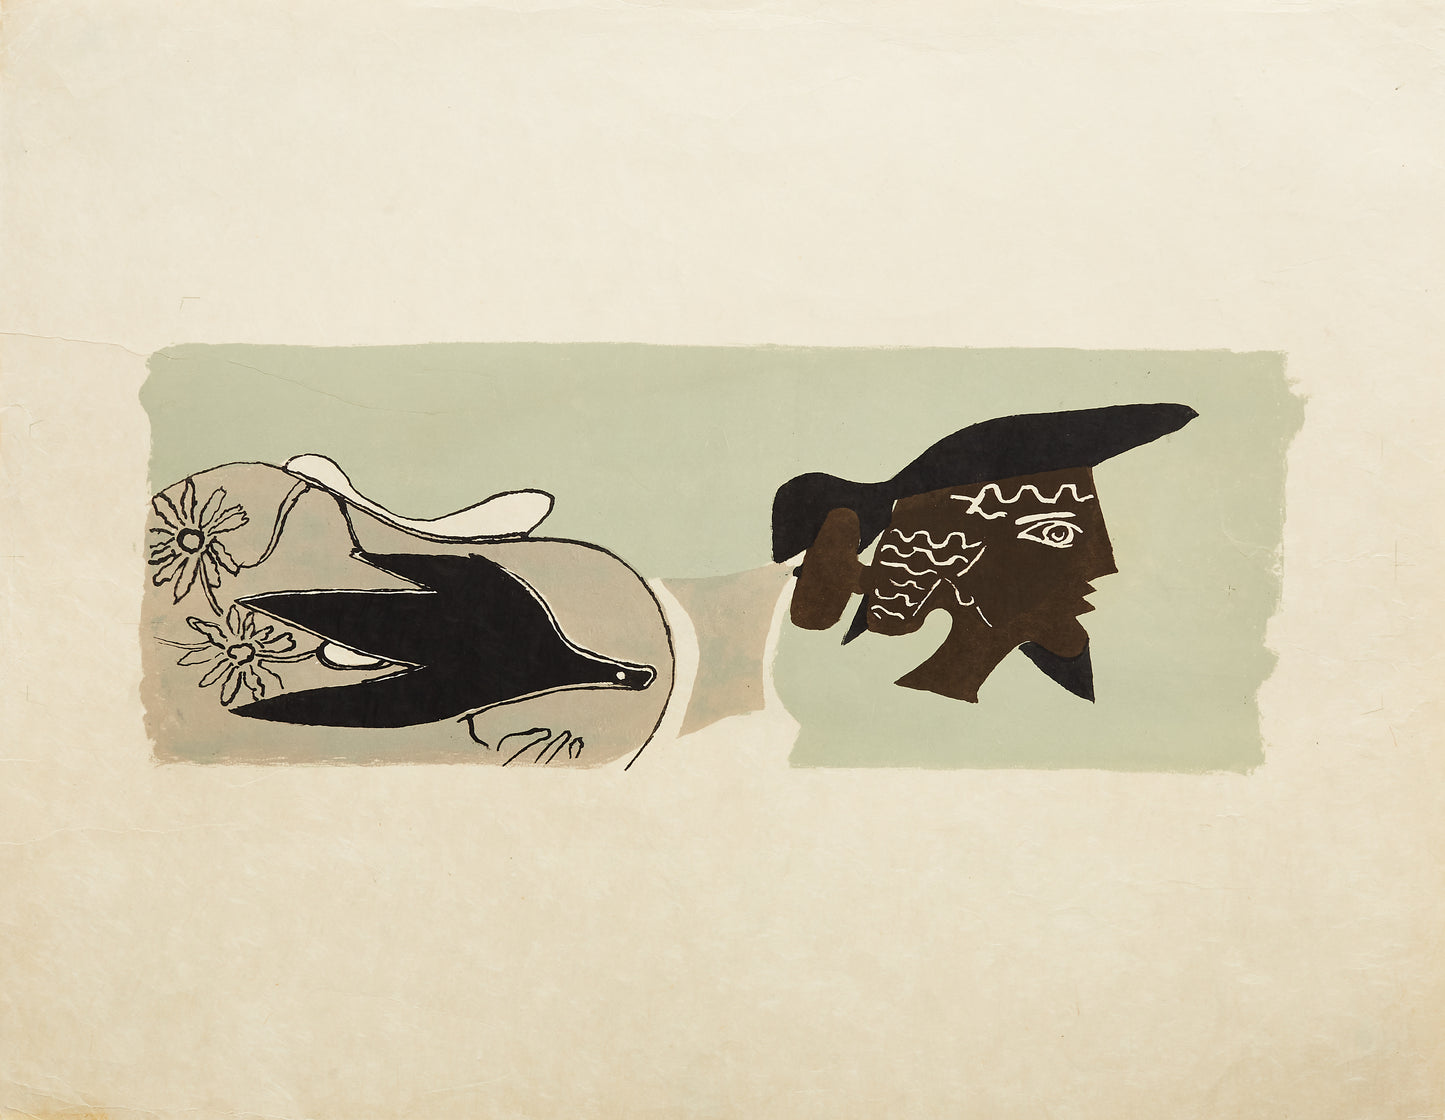 Le Poete by Georges Braque - Mourlot Editions - Fine_Art - Poster - Lithograph - Wall Art - Vintage - Prints - Original